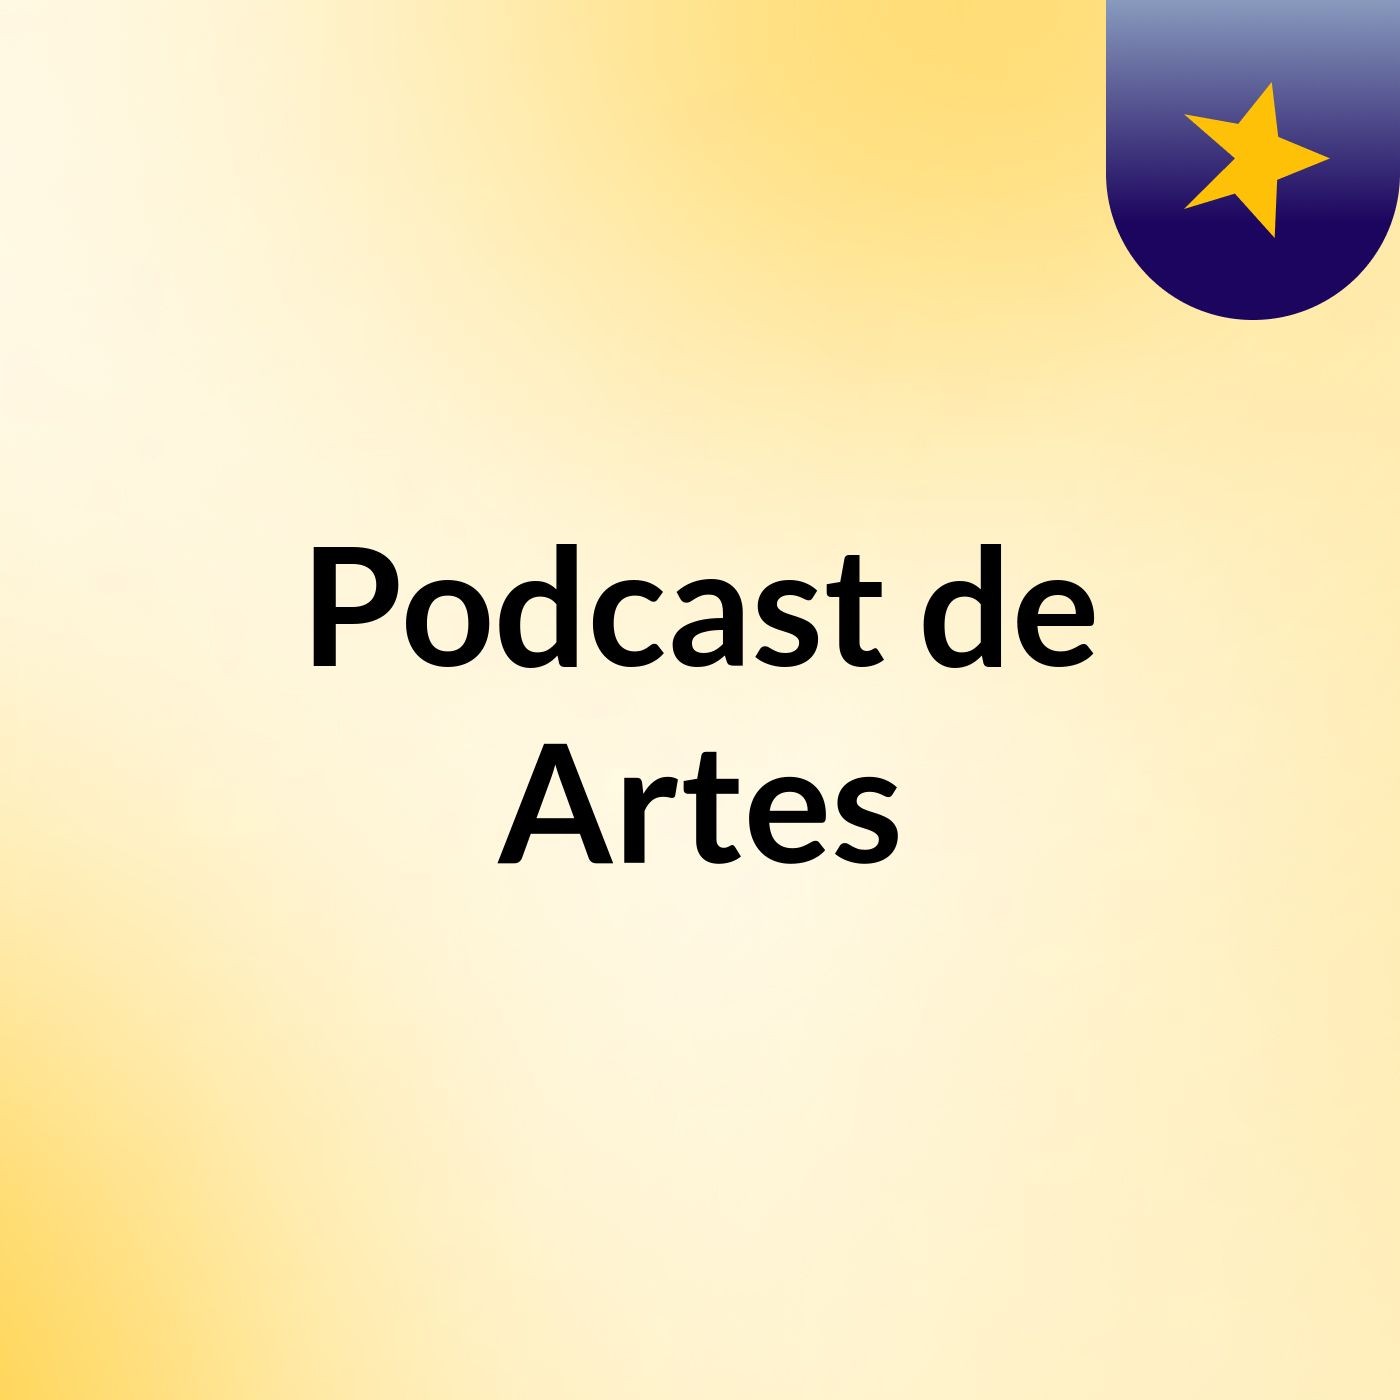 Podcast de Artes